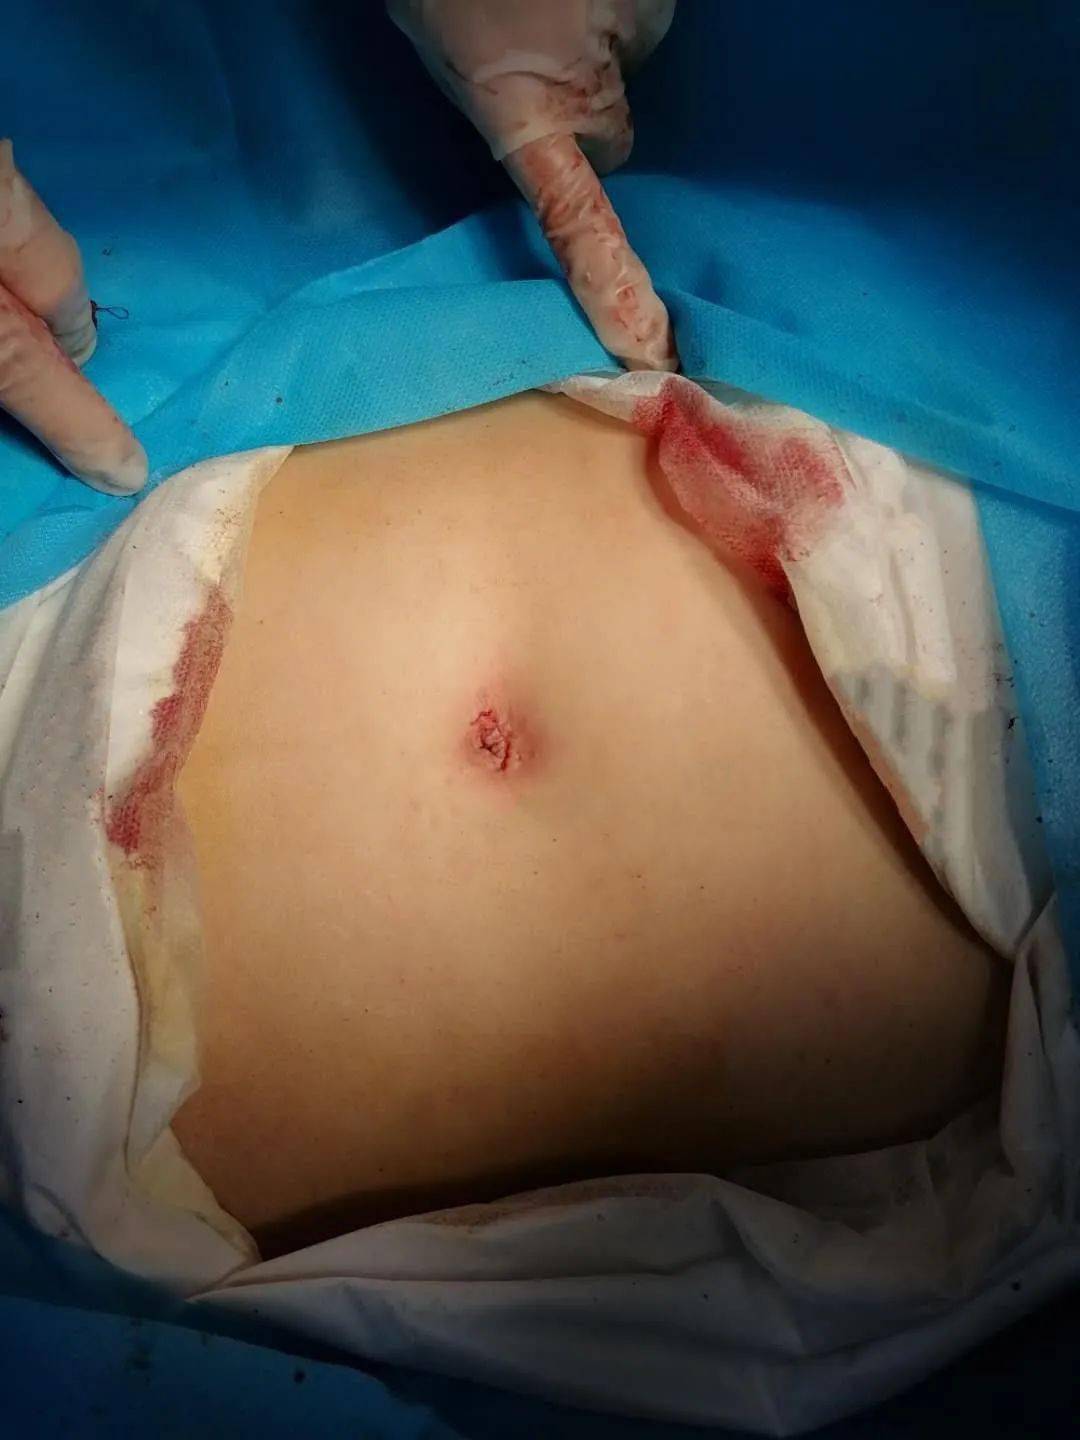 又一例单孔腹腔镜下治疗宫外孕手术在县妇幼保健院顺利开展!